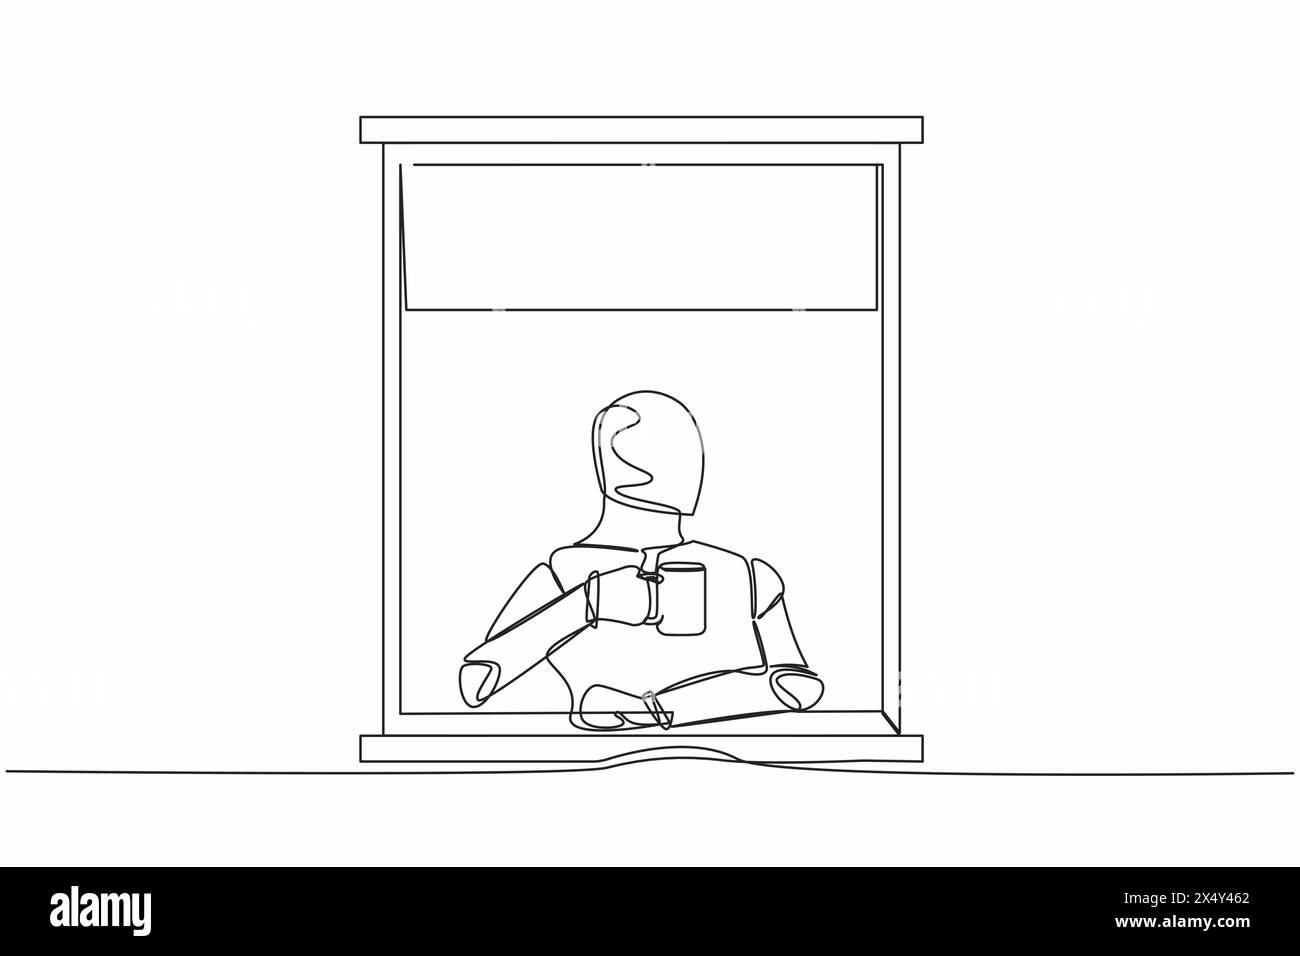 Ein Roboter mit durchgehender Linienzeichnung Genießen Sie heißen Kaffee oder Tee im Fensterhaus, halten Sie den Becher und schauen durch das Fenster. Zukunftstechnologie. Künstliche intel Stock Vektor